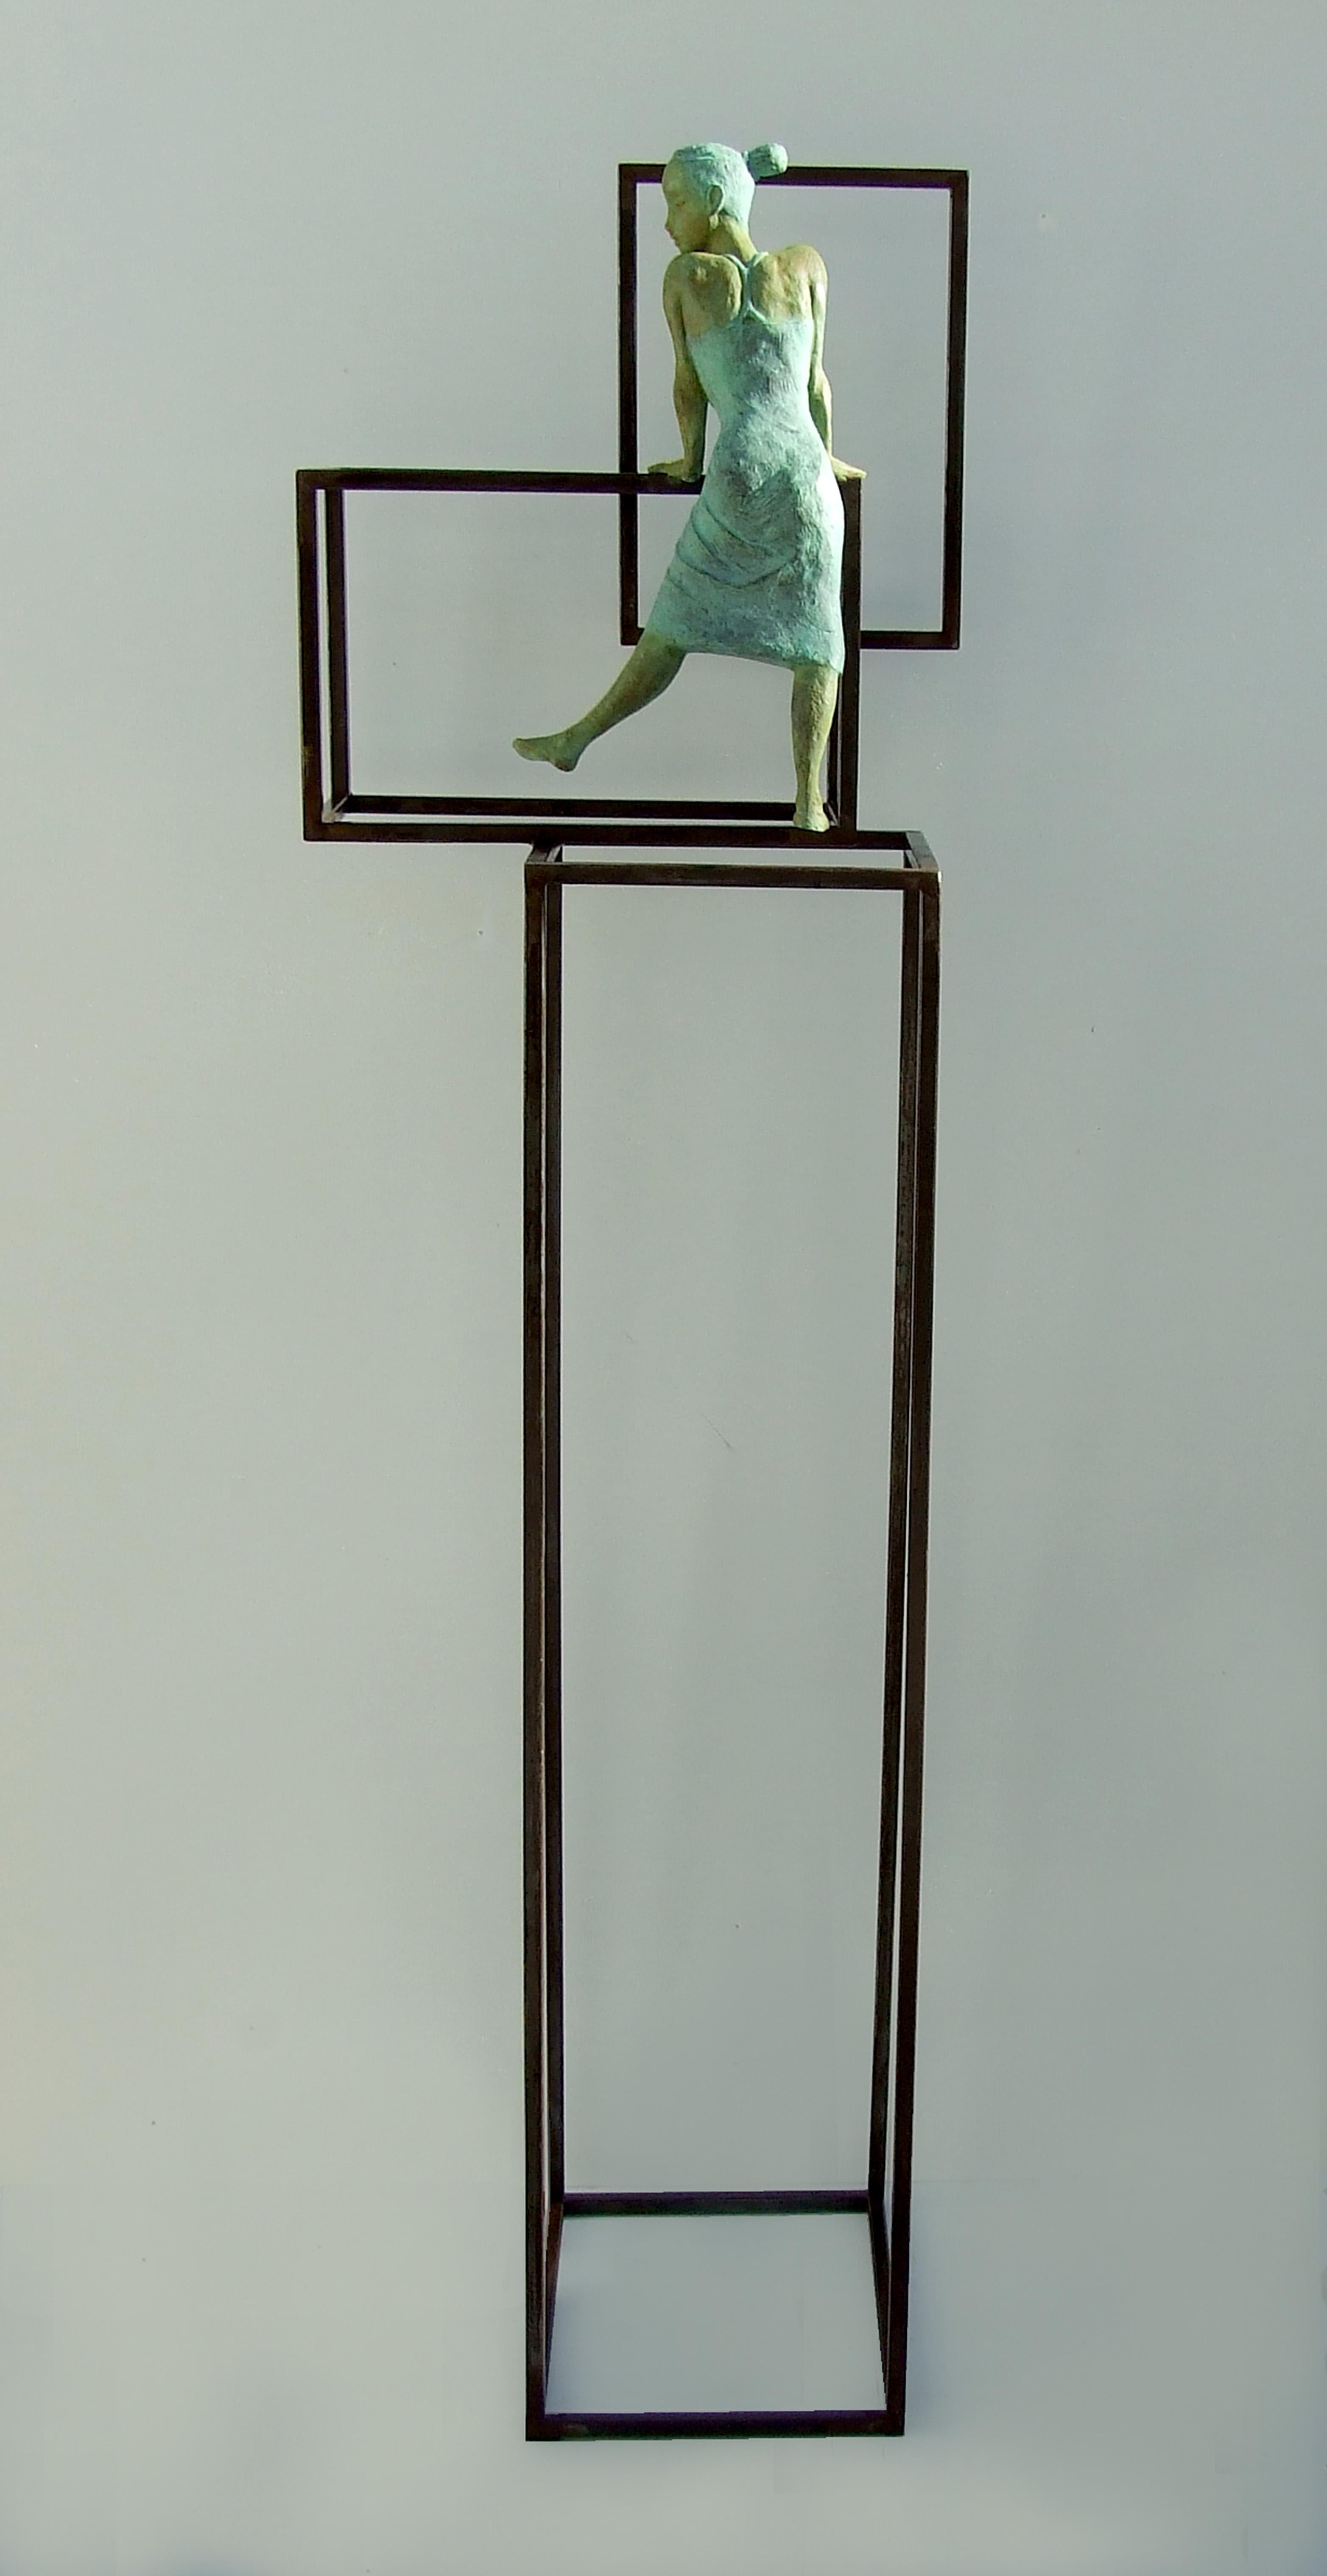 Joan Artigas Planas Figurative Sculpture - "Cuba Salsa" contemporary bronze floor sculpture figurative girl salsa dancing